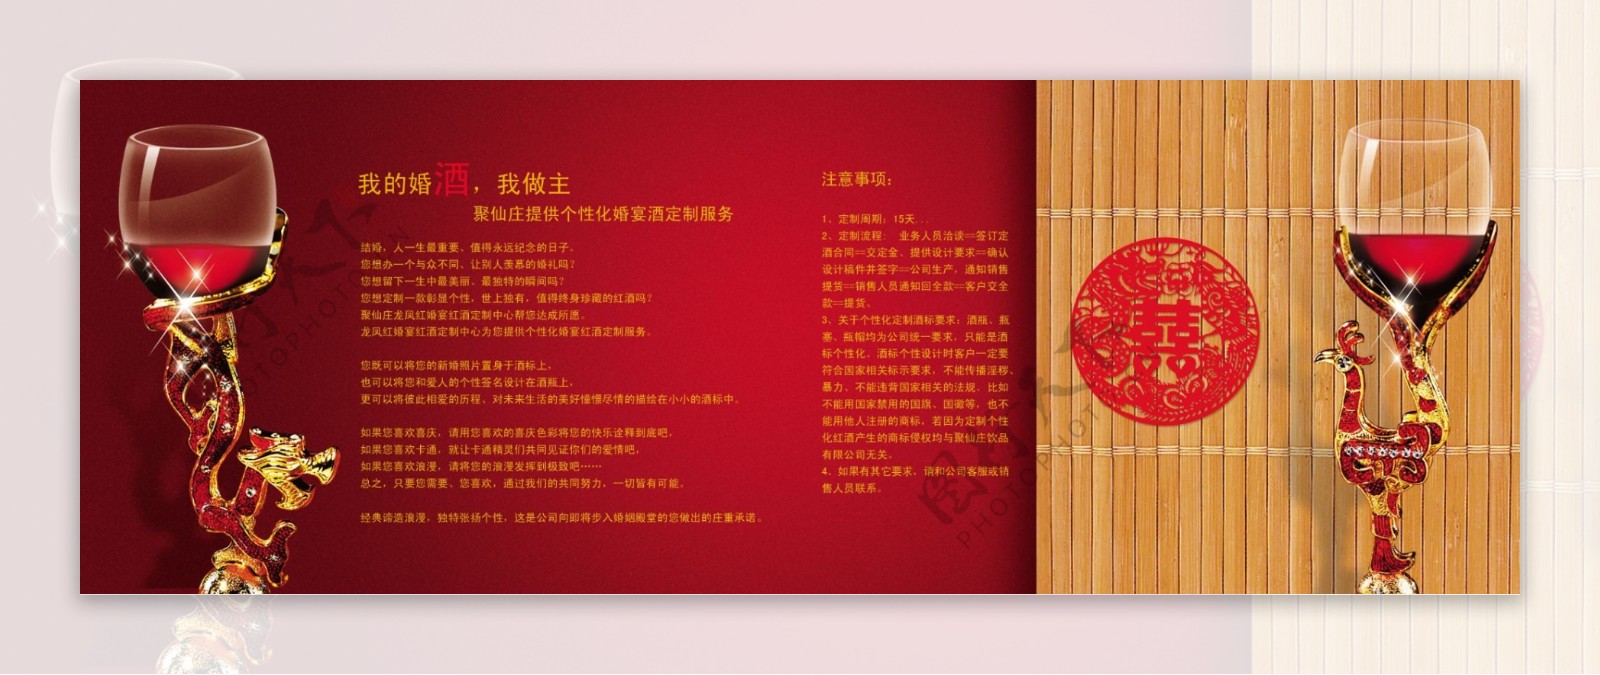 龙凤红婚宴酒画册